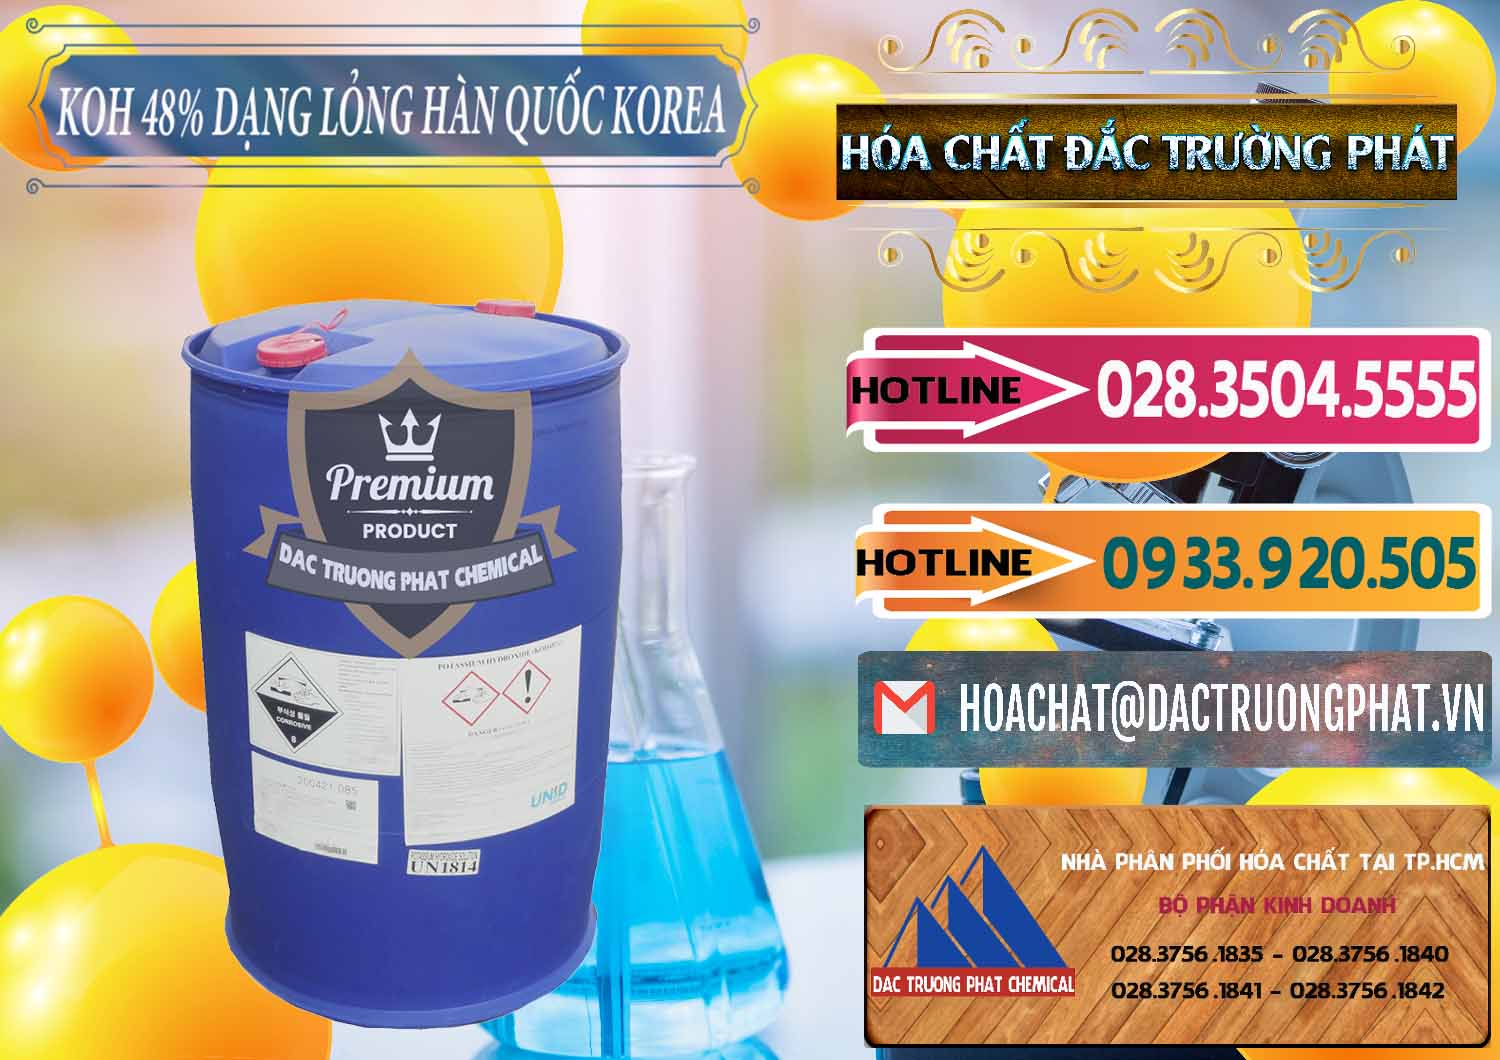 Cty chuyên bán ( cung cấp ) KOH Dạng Nước – Potassium Hydroxide Lỏng 48% Hàn Quốc Korea - 0293 - Nhà cung cấp ( phân phối ) hóa chất tại TP.HCM - dactruongphat.vn